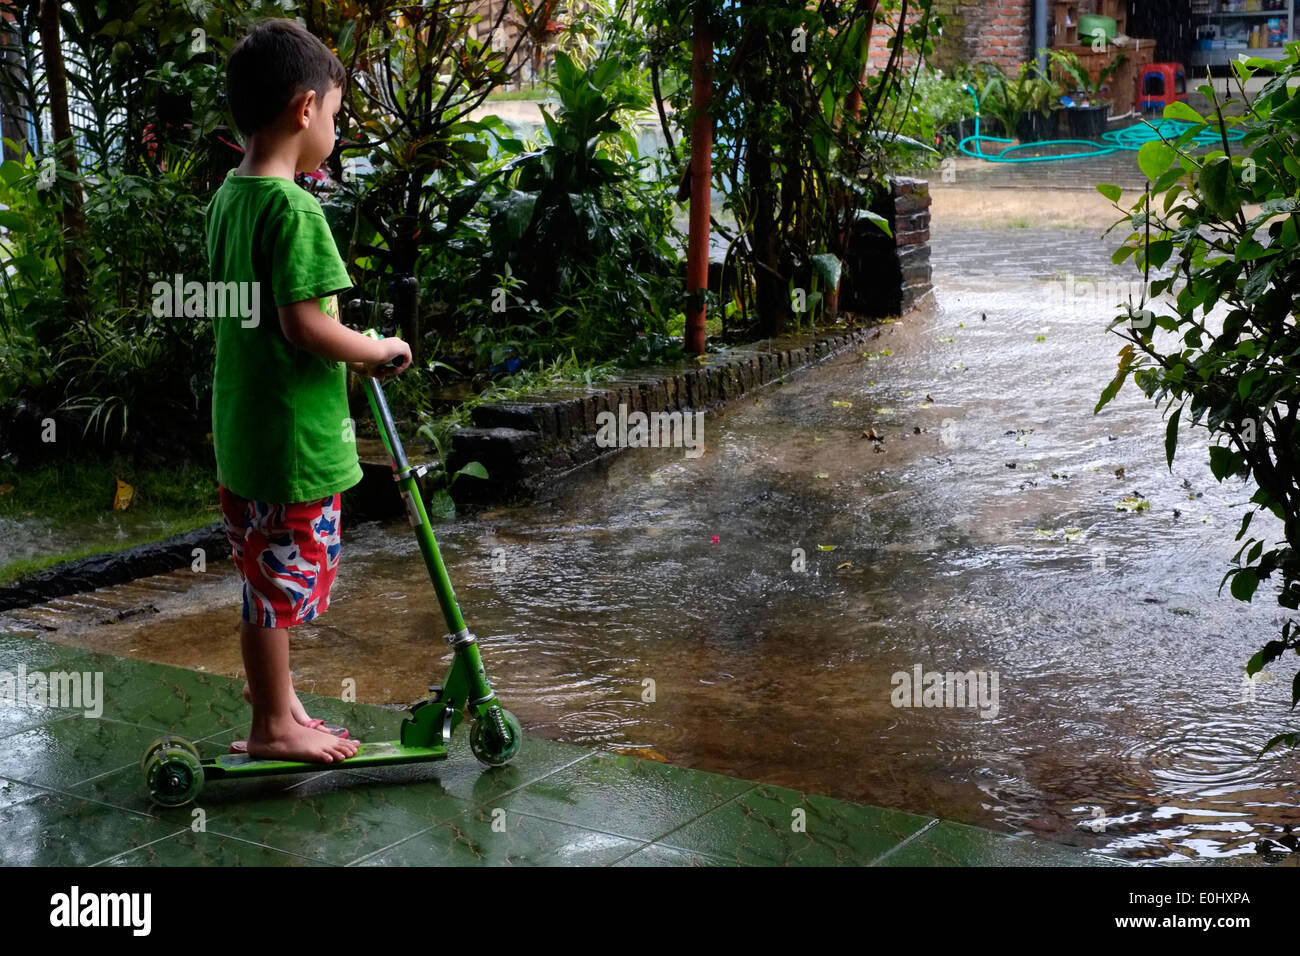 Petit garçon avec son scooter à rêveusement à la pluie battante qu'il attend de sortir et de jouer dans un village rural de l'Indonésie Banque D'Images